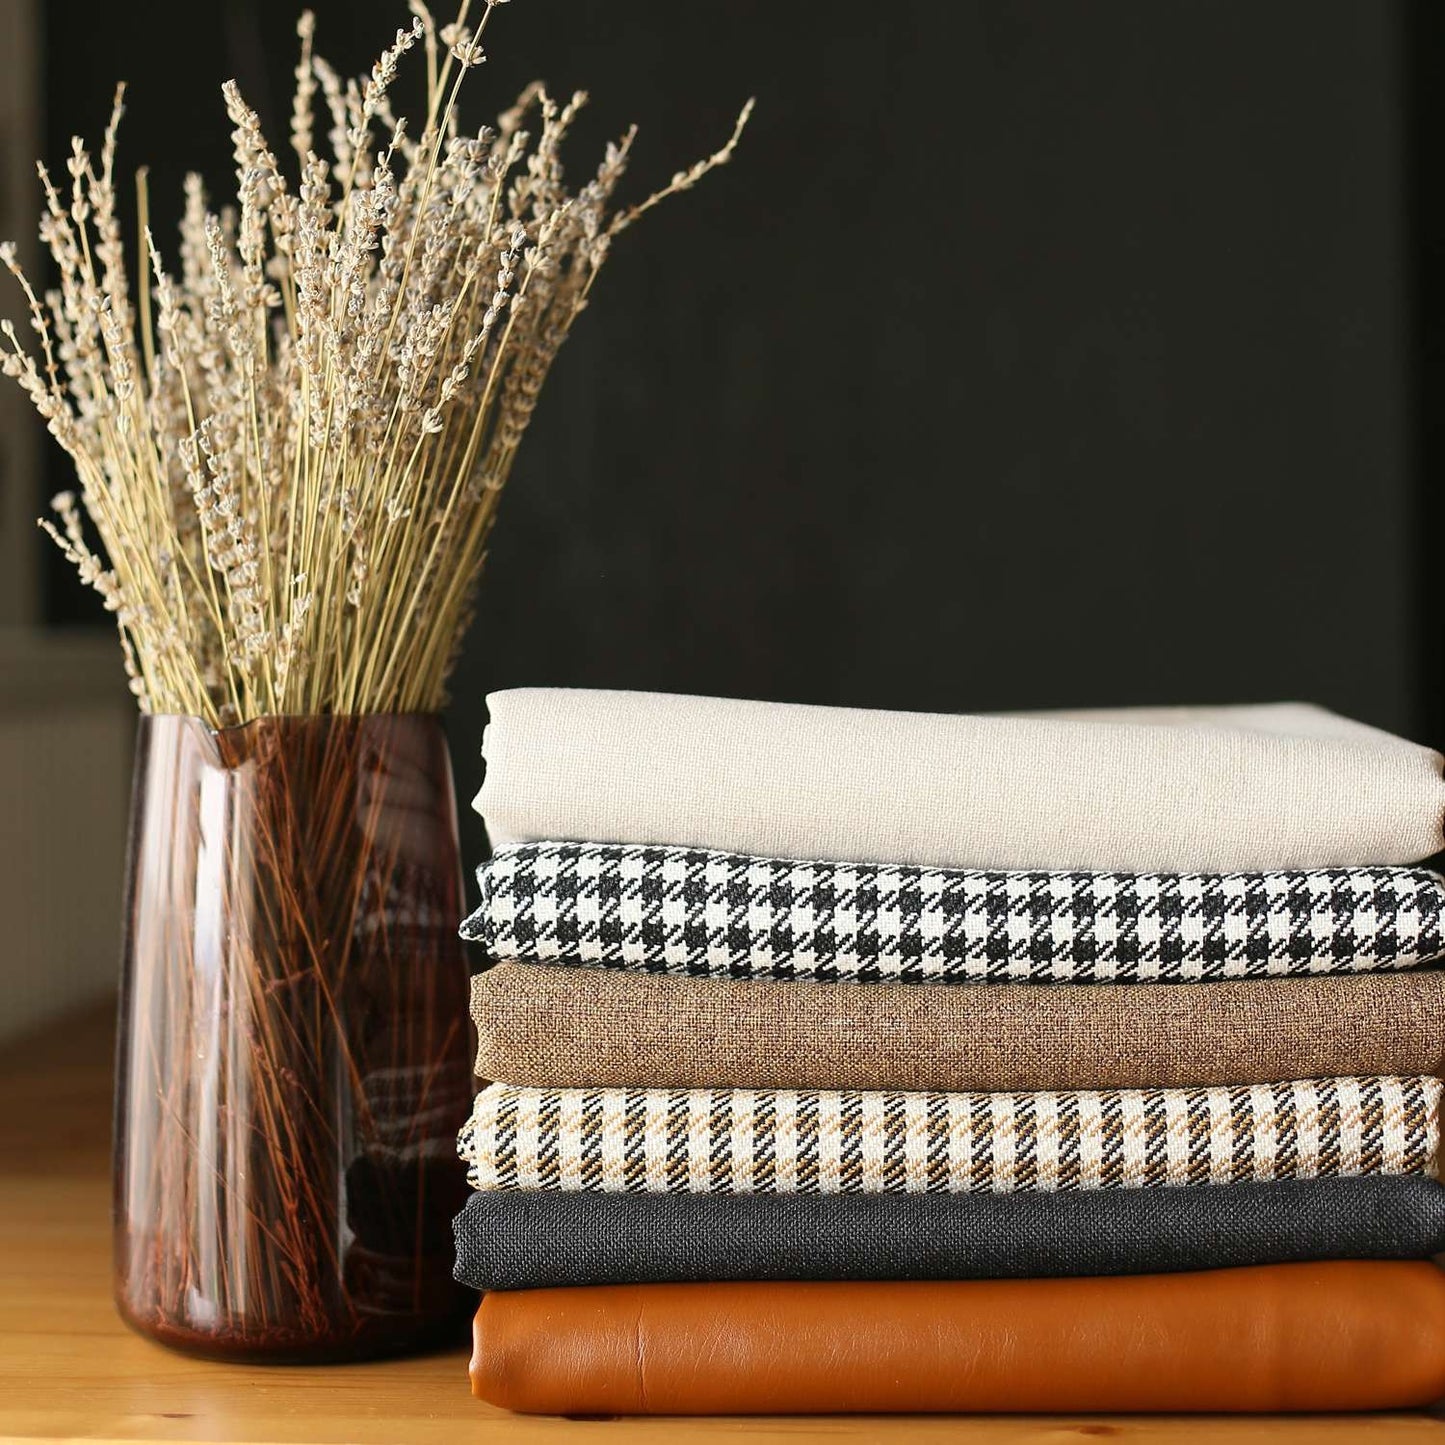 Set Of 4 Tan Jacquard Lumbar Pillow Covers